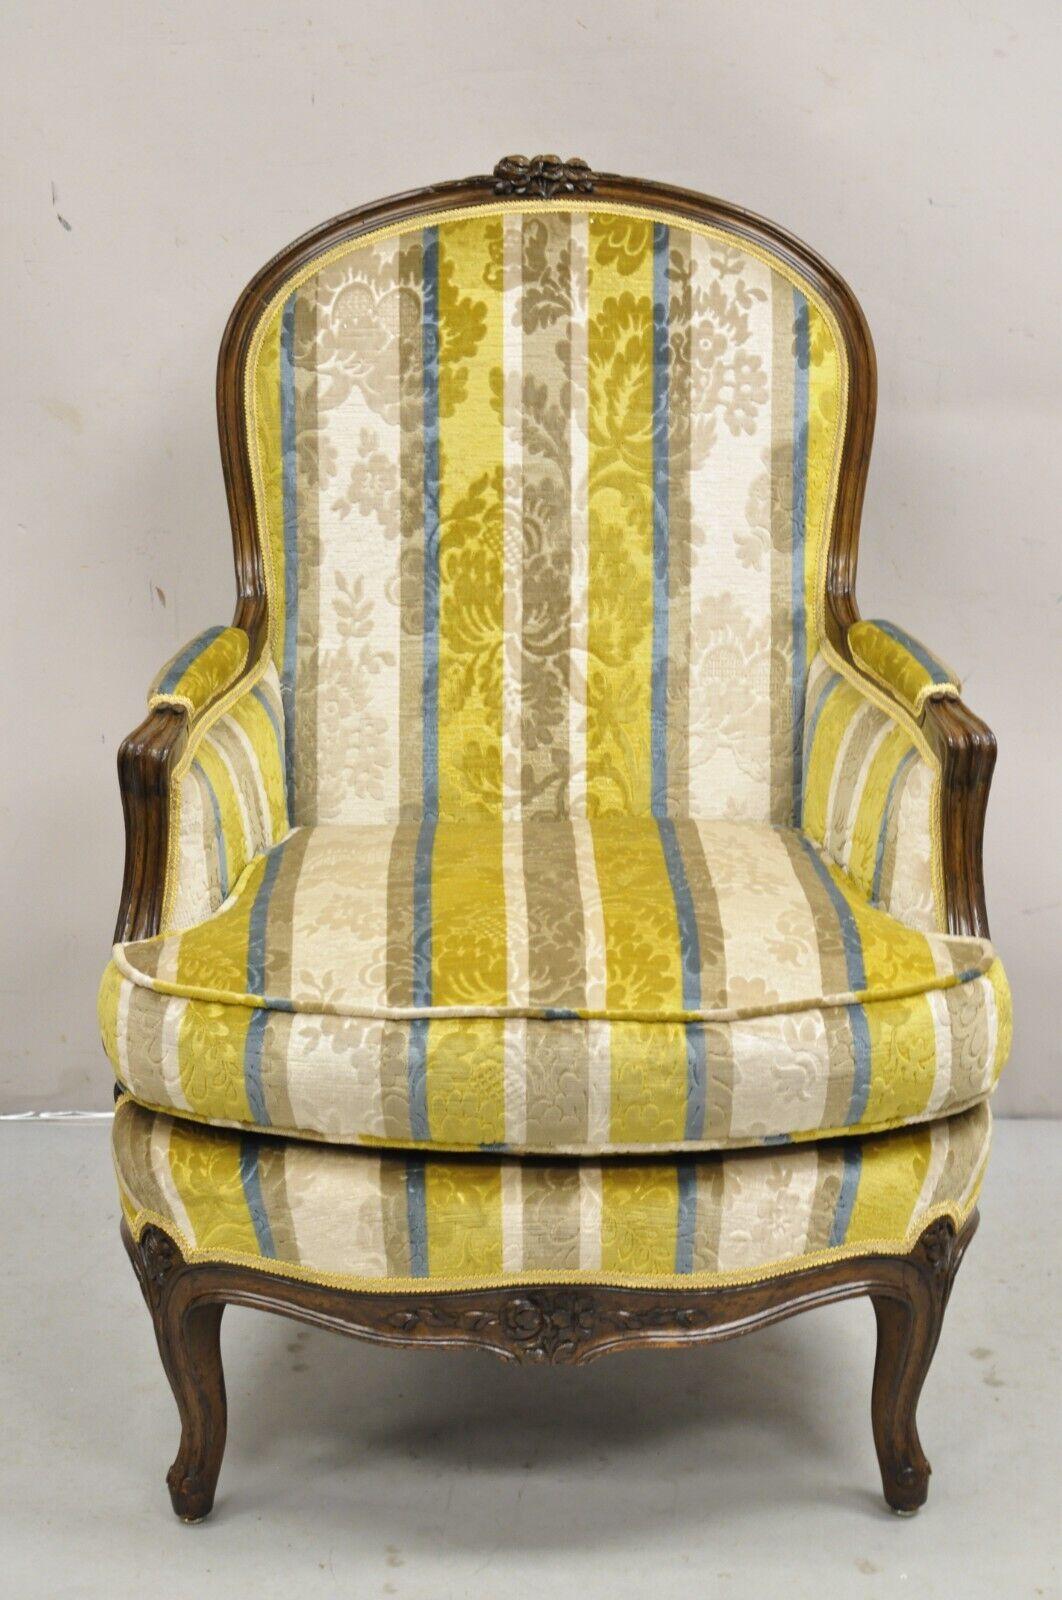 Vintage French Louis XV Style Carved Walnut Upholstered Bergere Lounge Arm Chair. L'article présente un revêtement imprimé bleu, jaune et beige, un cadre finement sculpté et vieilli, un dossier soutenu par un châssis, une très belle chaise vintage.